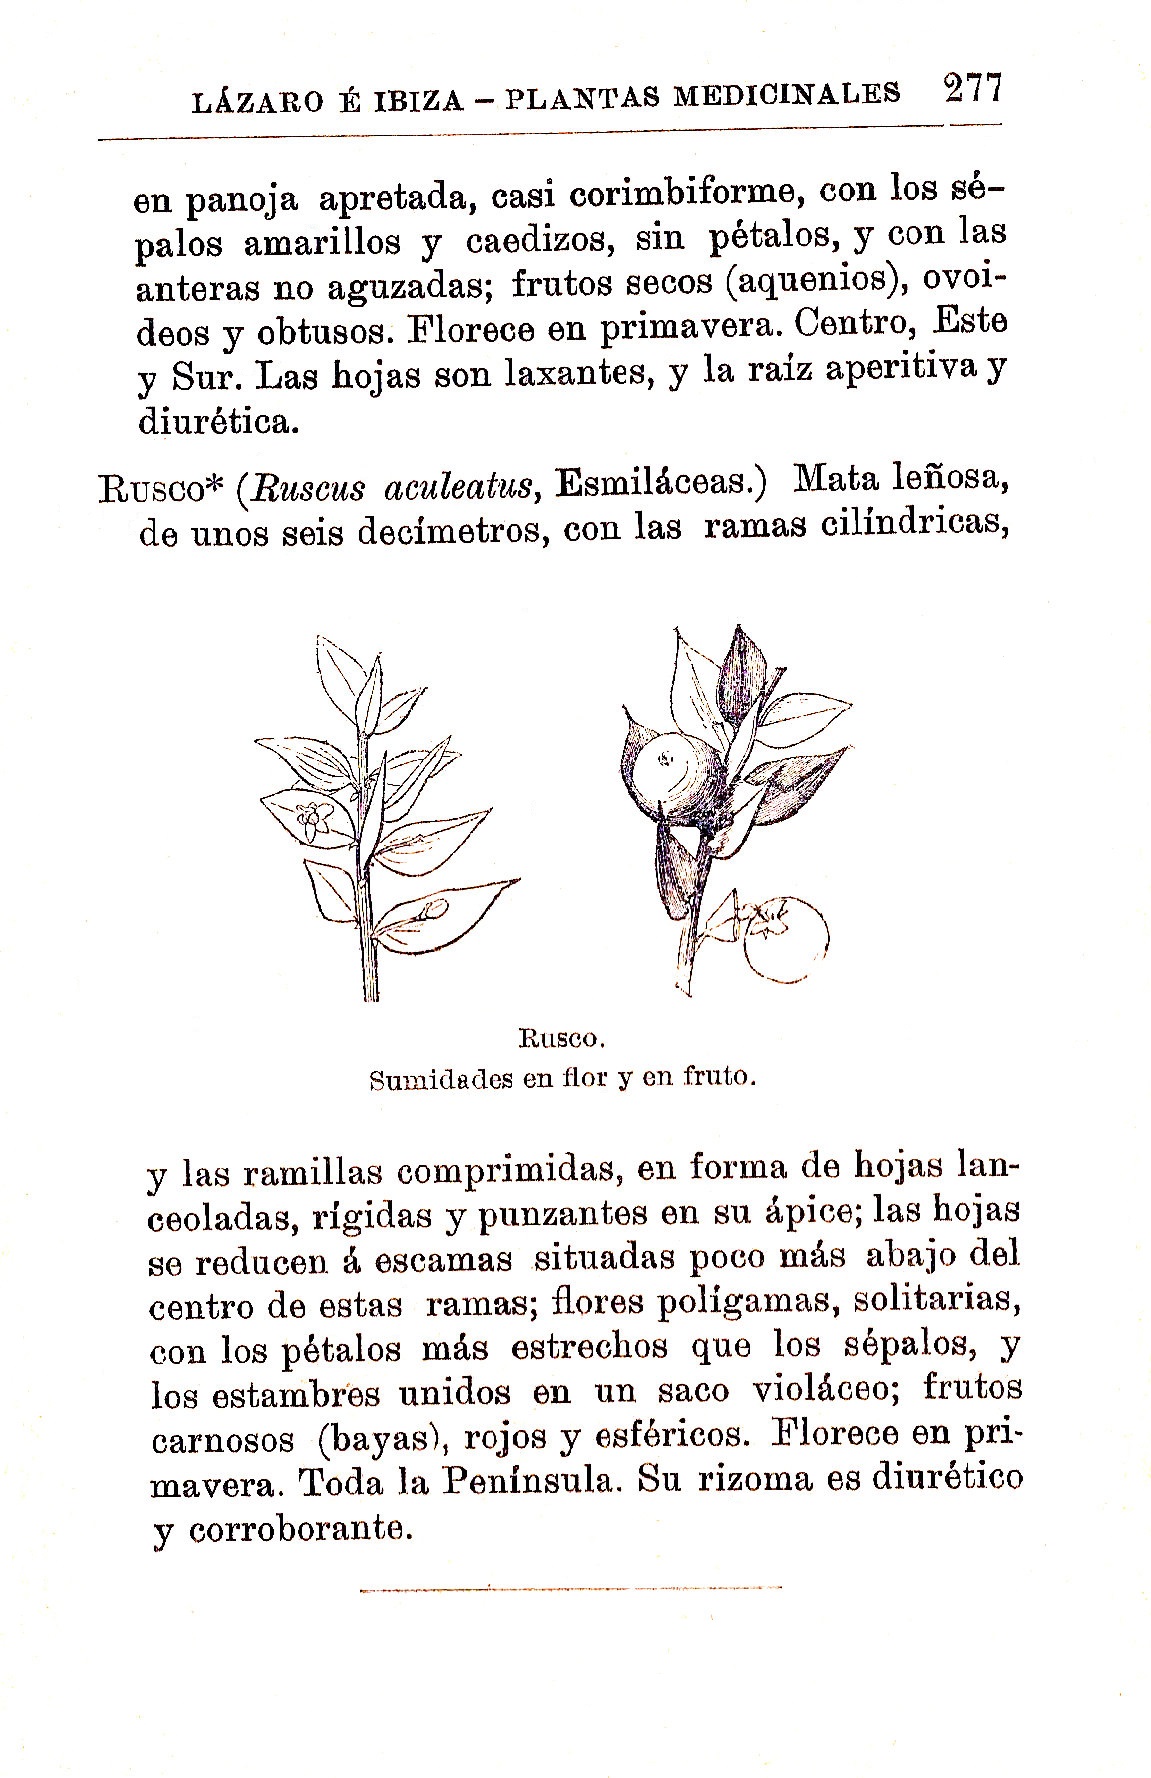 Plantas Medicinales. Blas Lazaro Ibiza. Índice alfabético de plantas. R. Rusco.